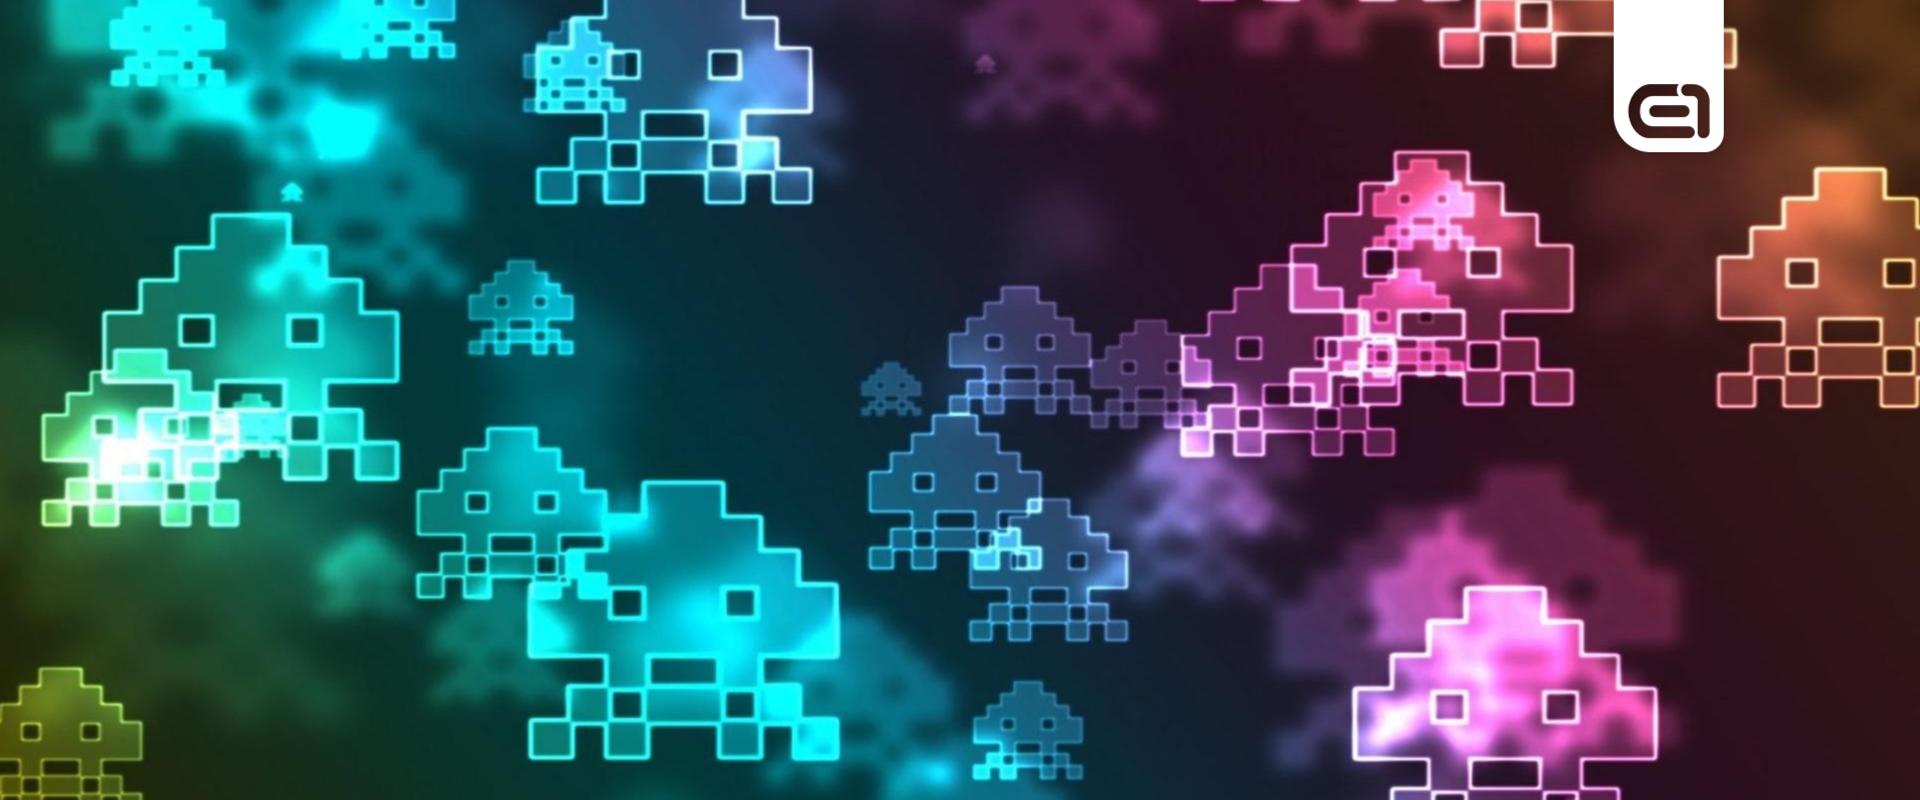 Így született meg az egyik leglegendásabb játék, a Space Invaders